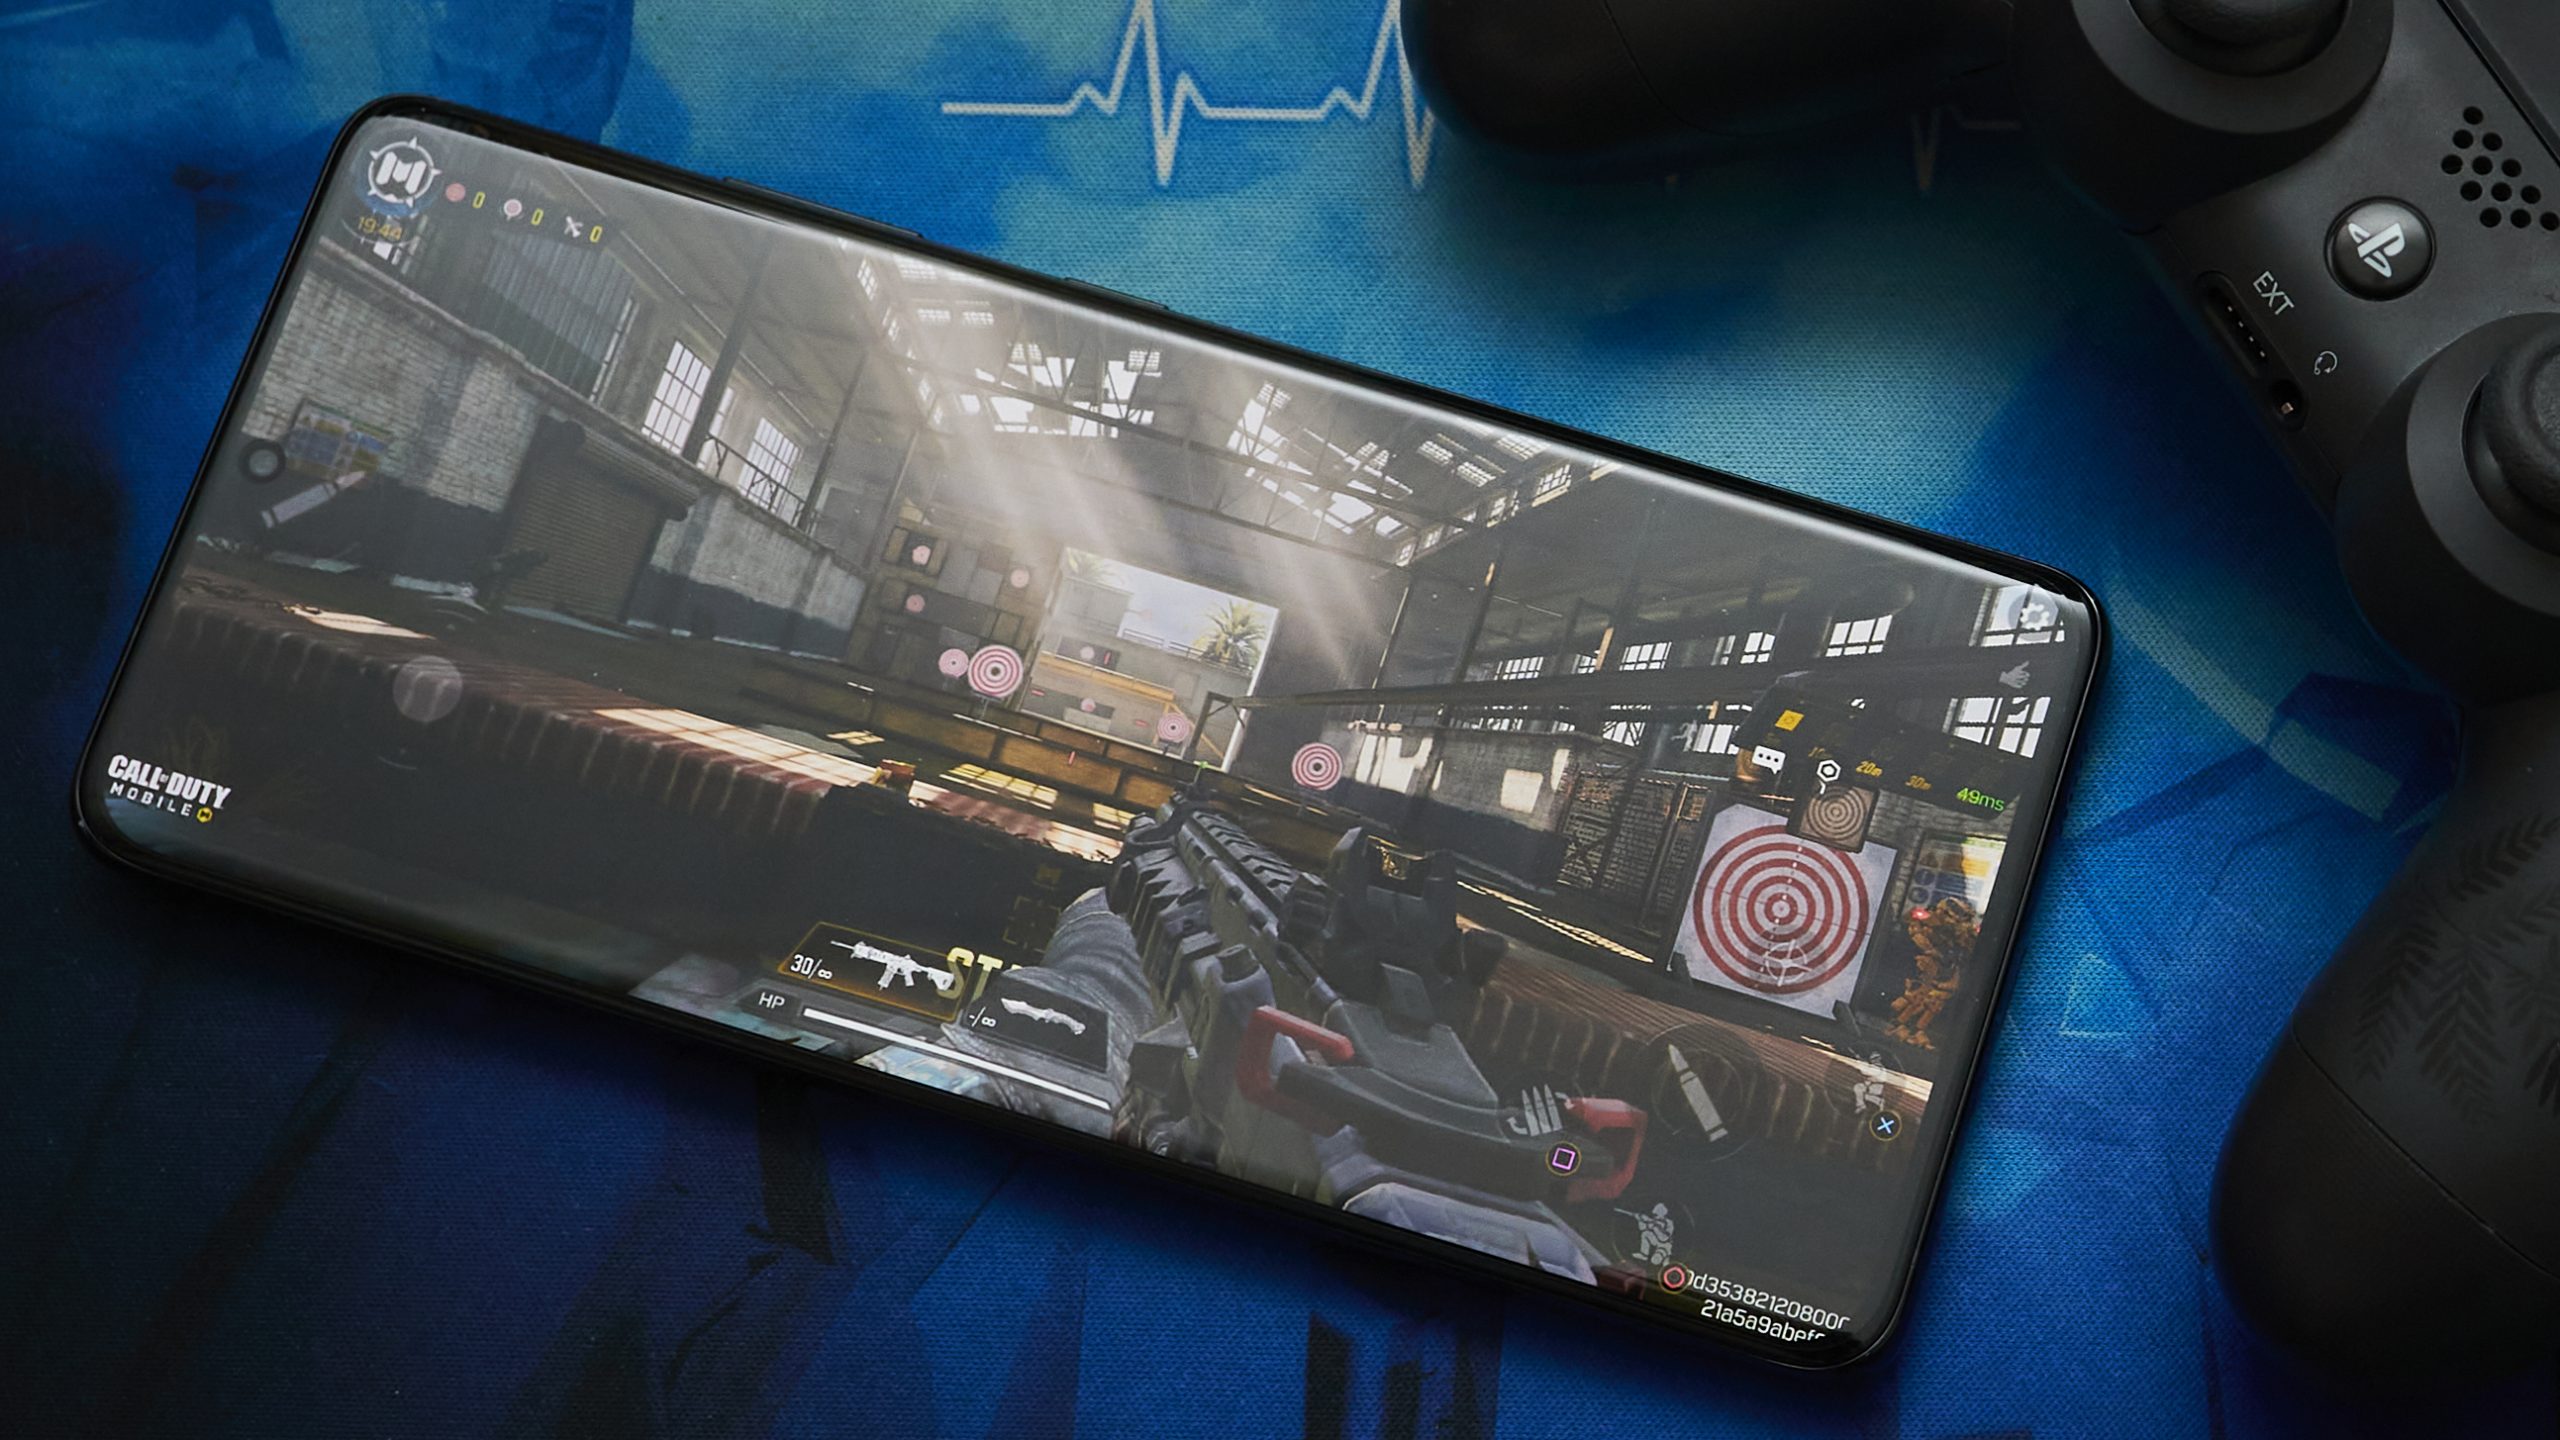 Samsung Galaxy S21 Ultra gaming experience | WASD